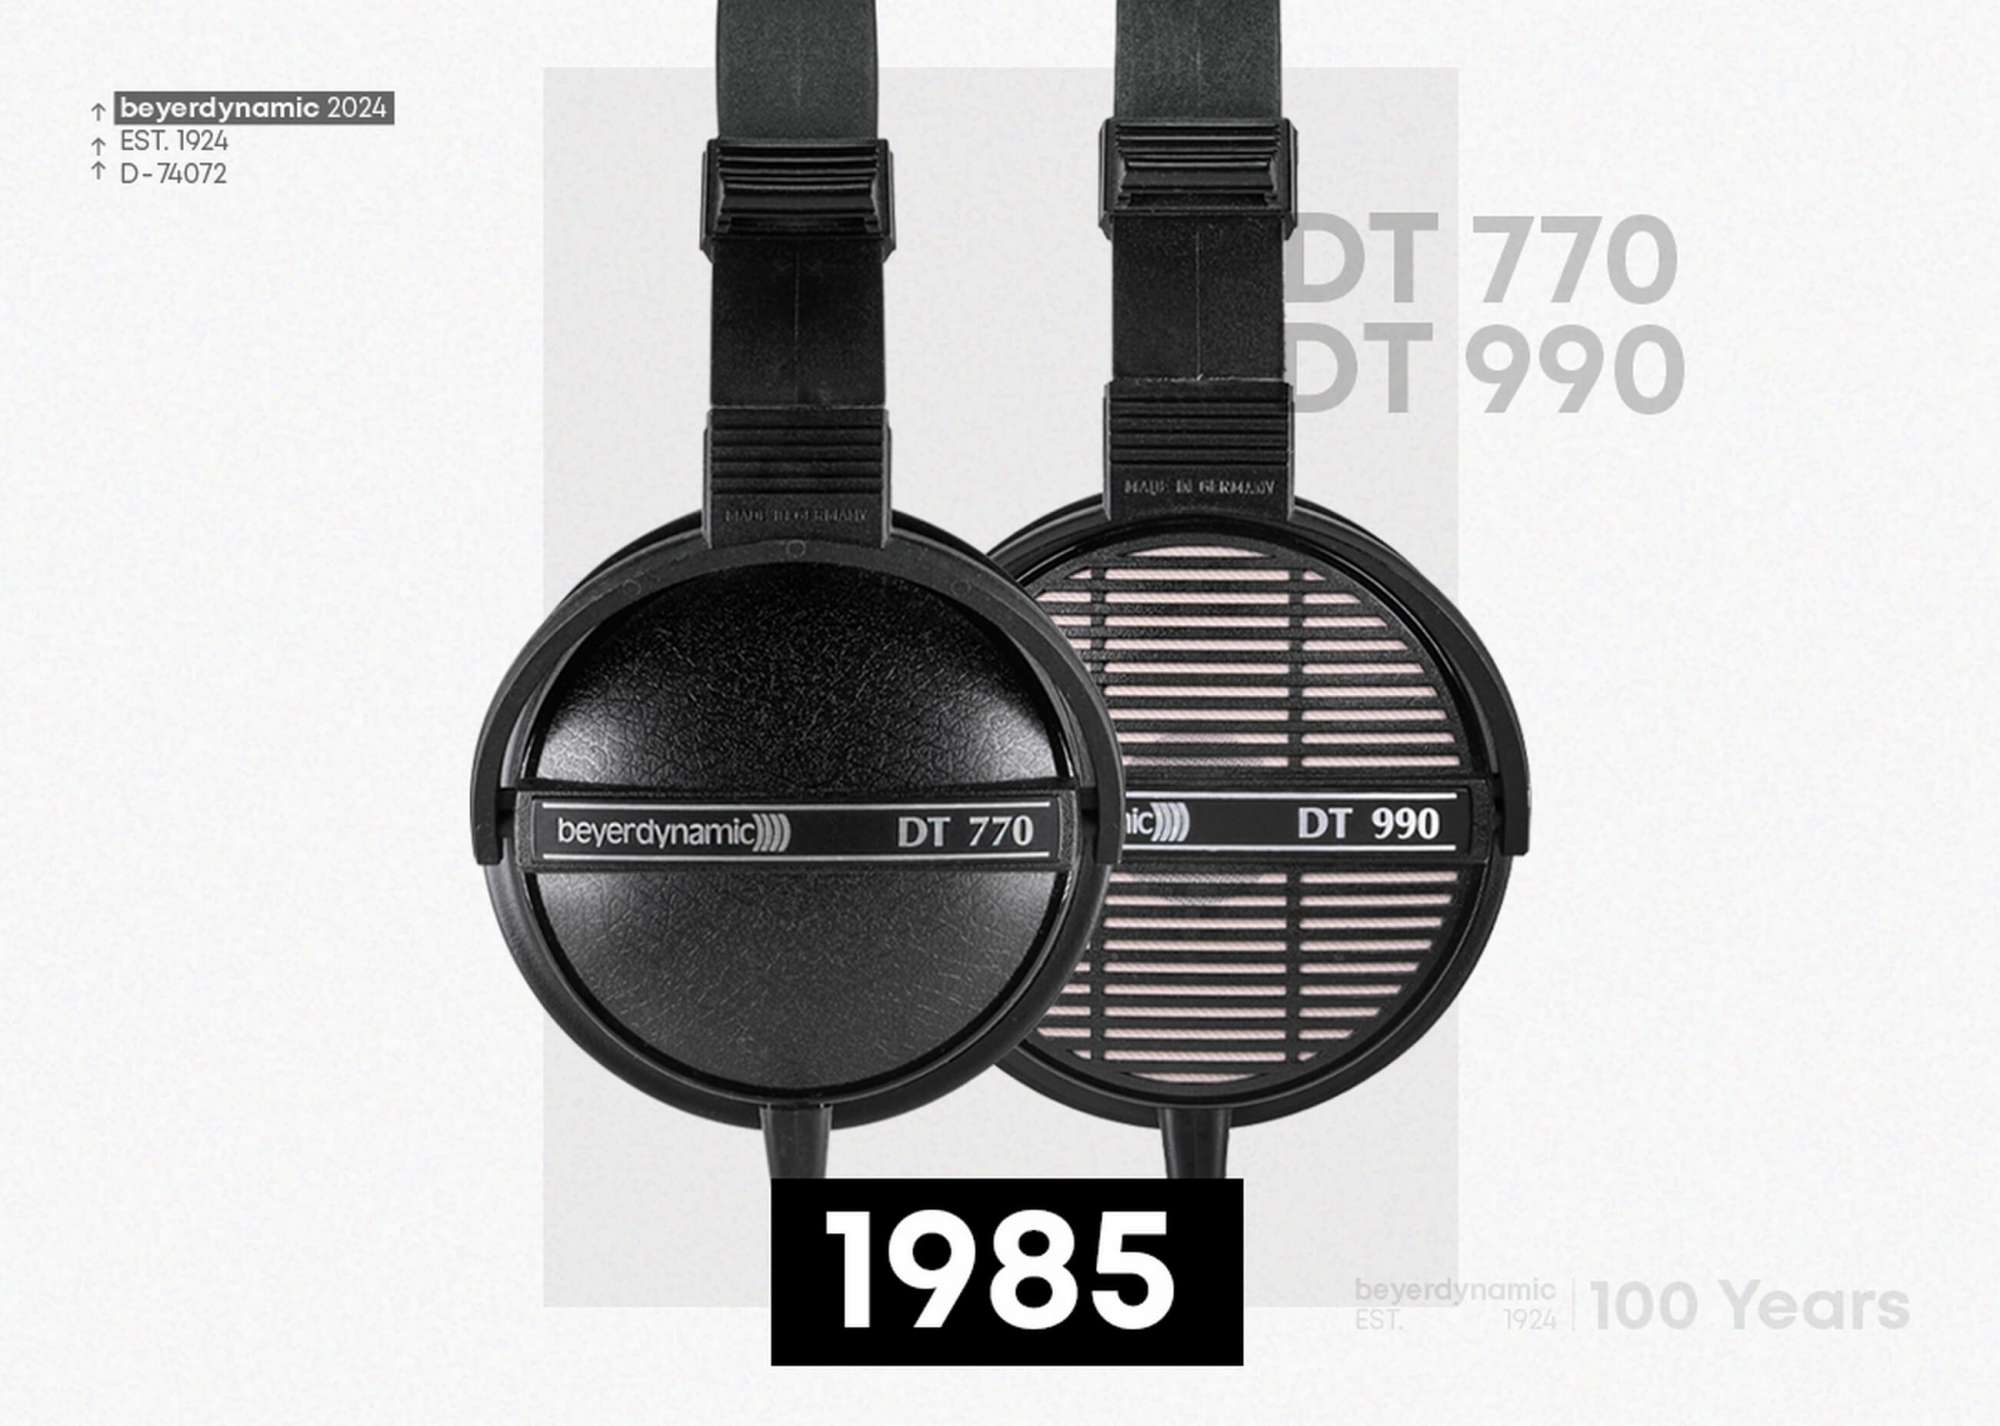 Beyerdynamic DT 770 és DT 990 fejhallgatók 1985-ben